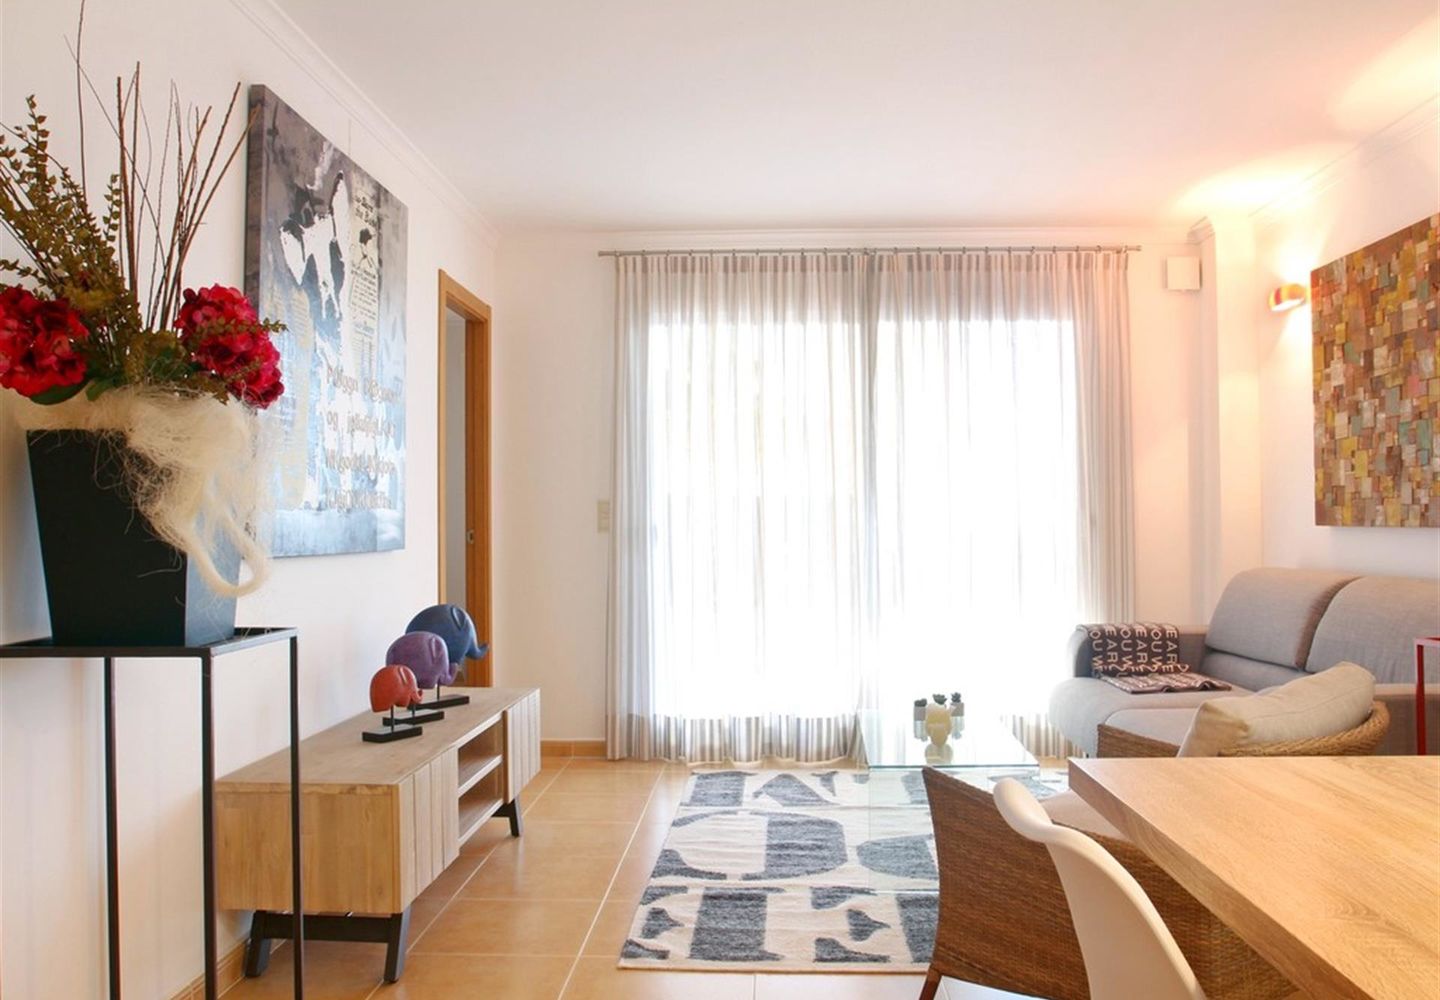 Casalina España vous propose en vente un nouvel appartement au cœur de la Costa Blanca Nord se trouve La Cumbre del Sol. Profitez pendant quelques jours, une période de vacances, une période plus longue où toute l'année. Quel que soit votre choix, ?